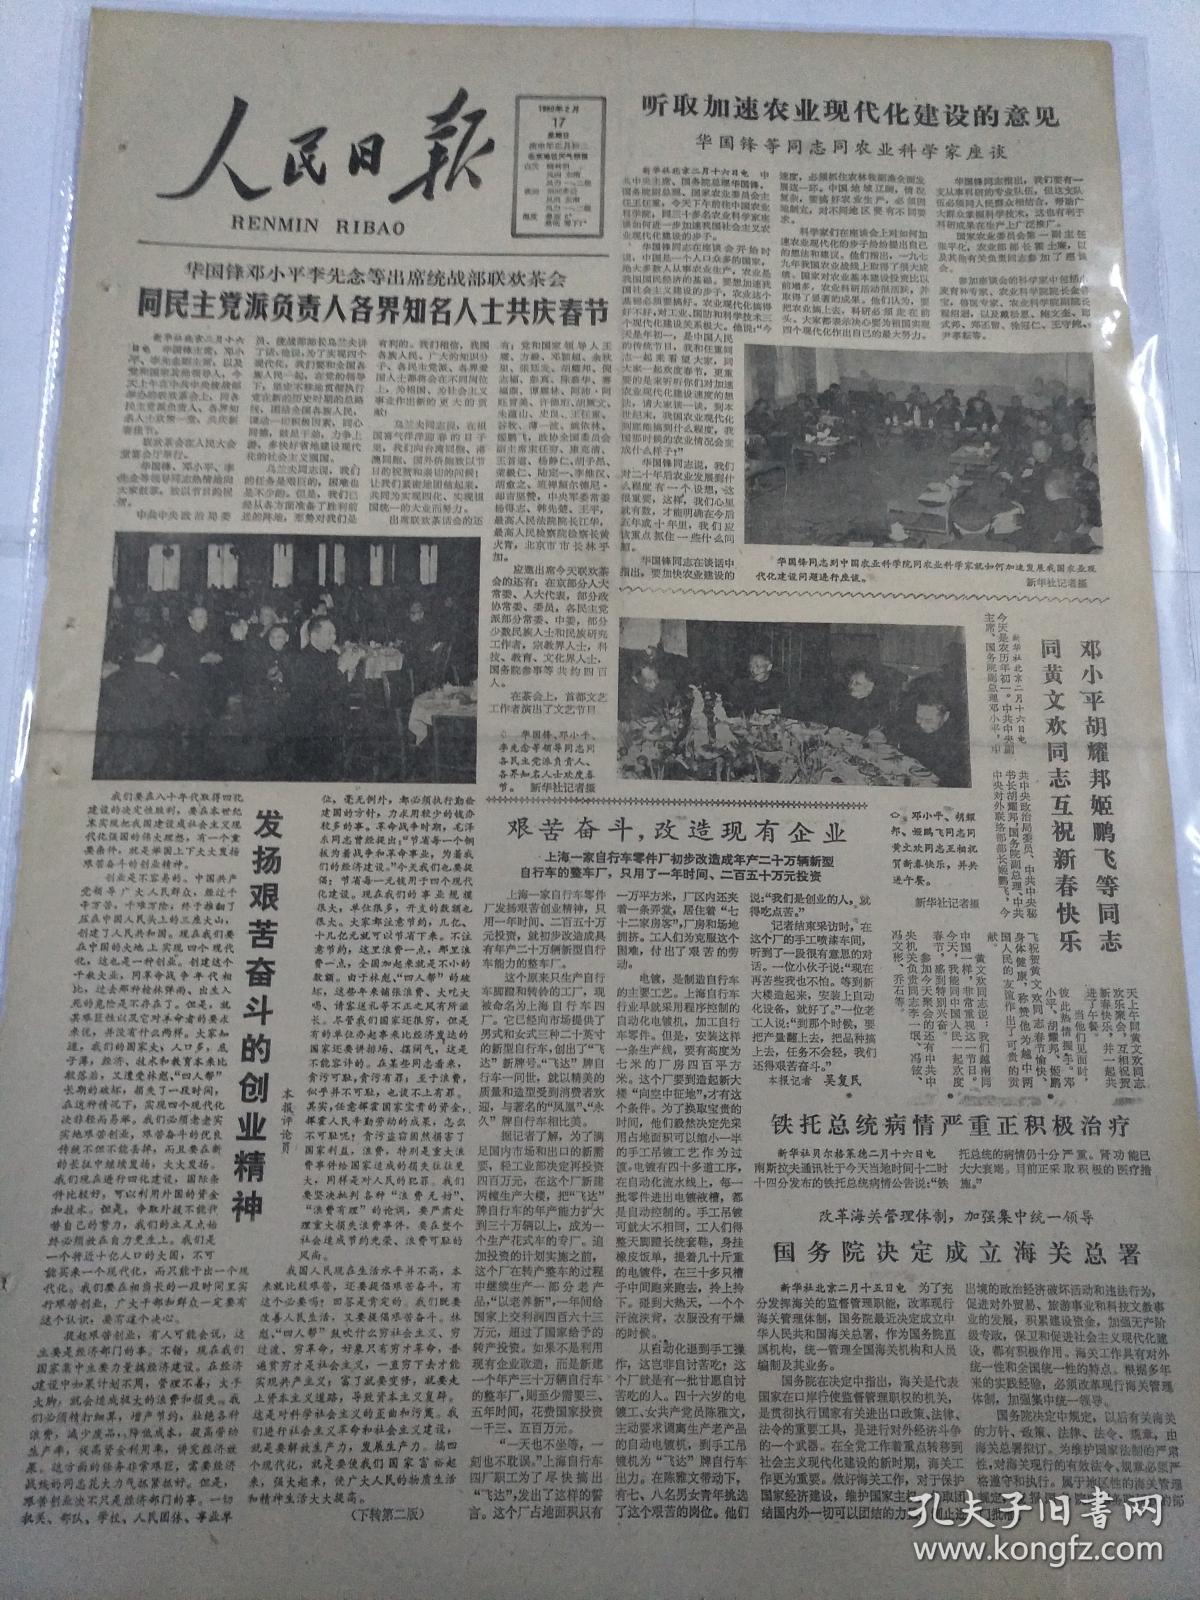 人民日报1980年2月17日(4开四版)华国锋邓小